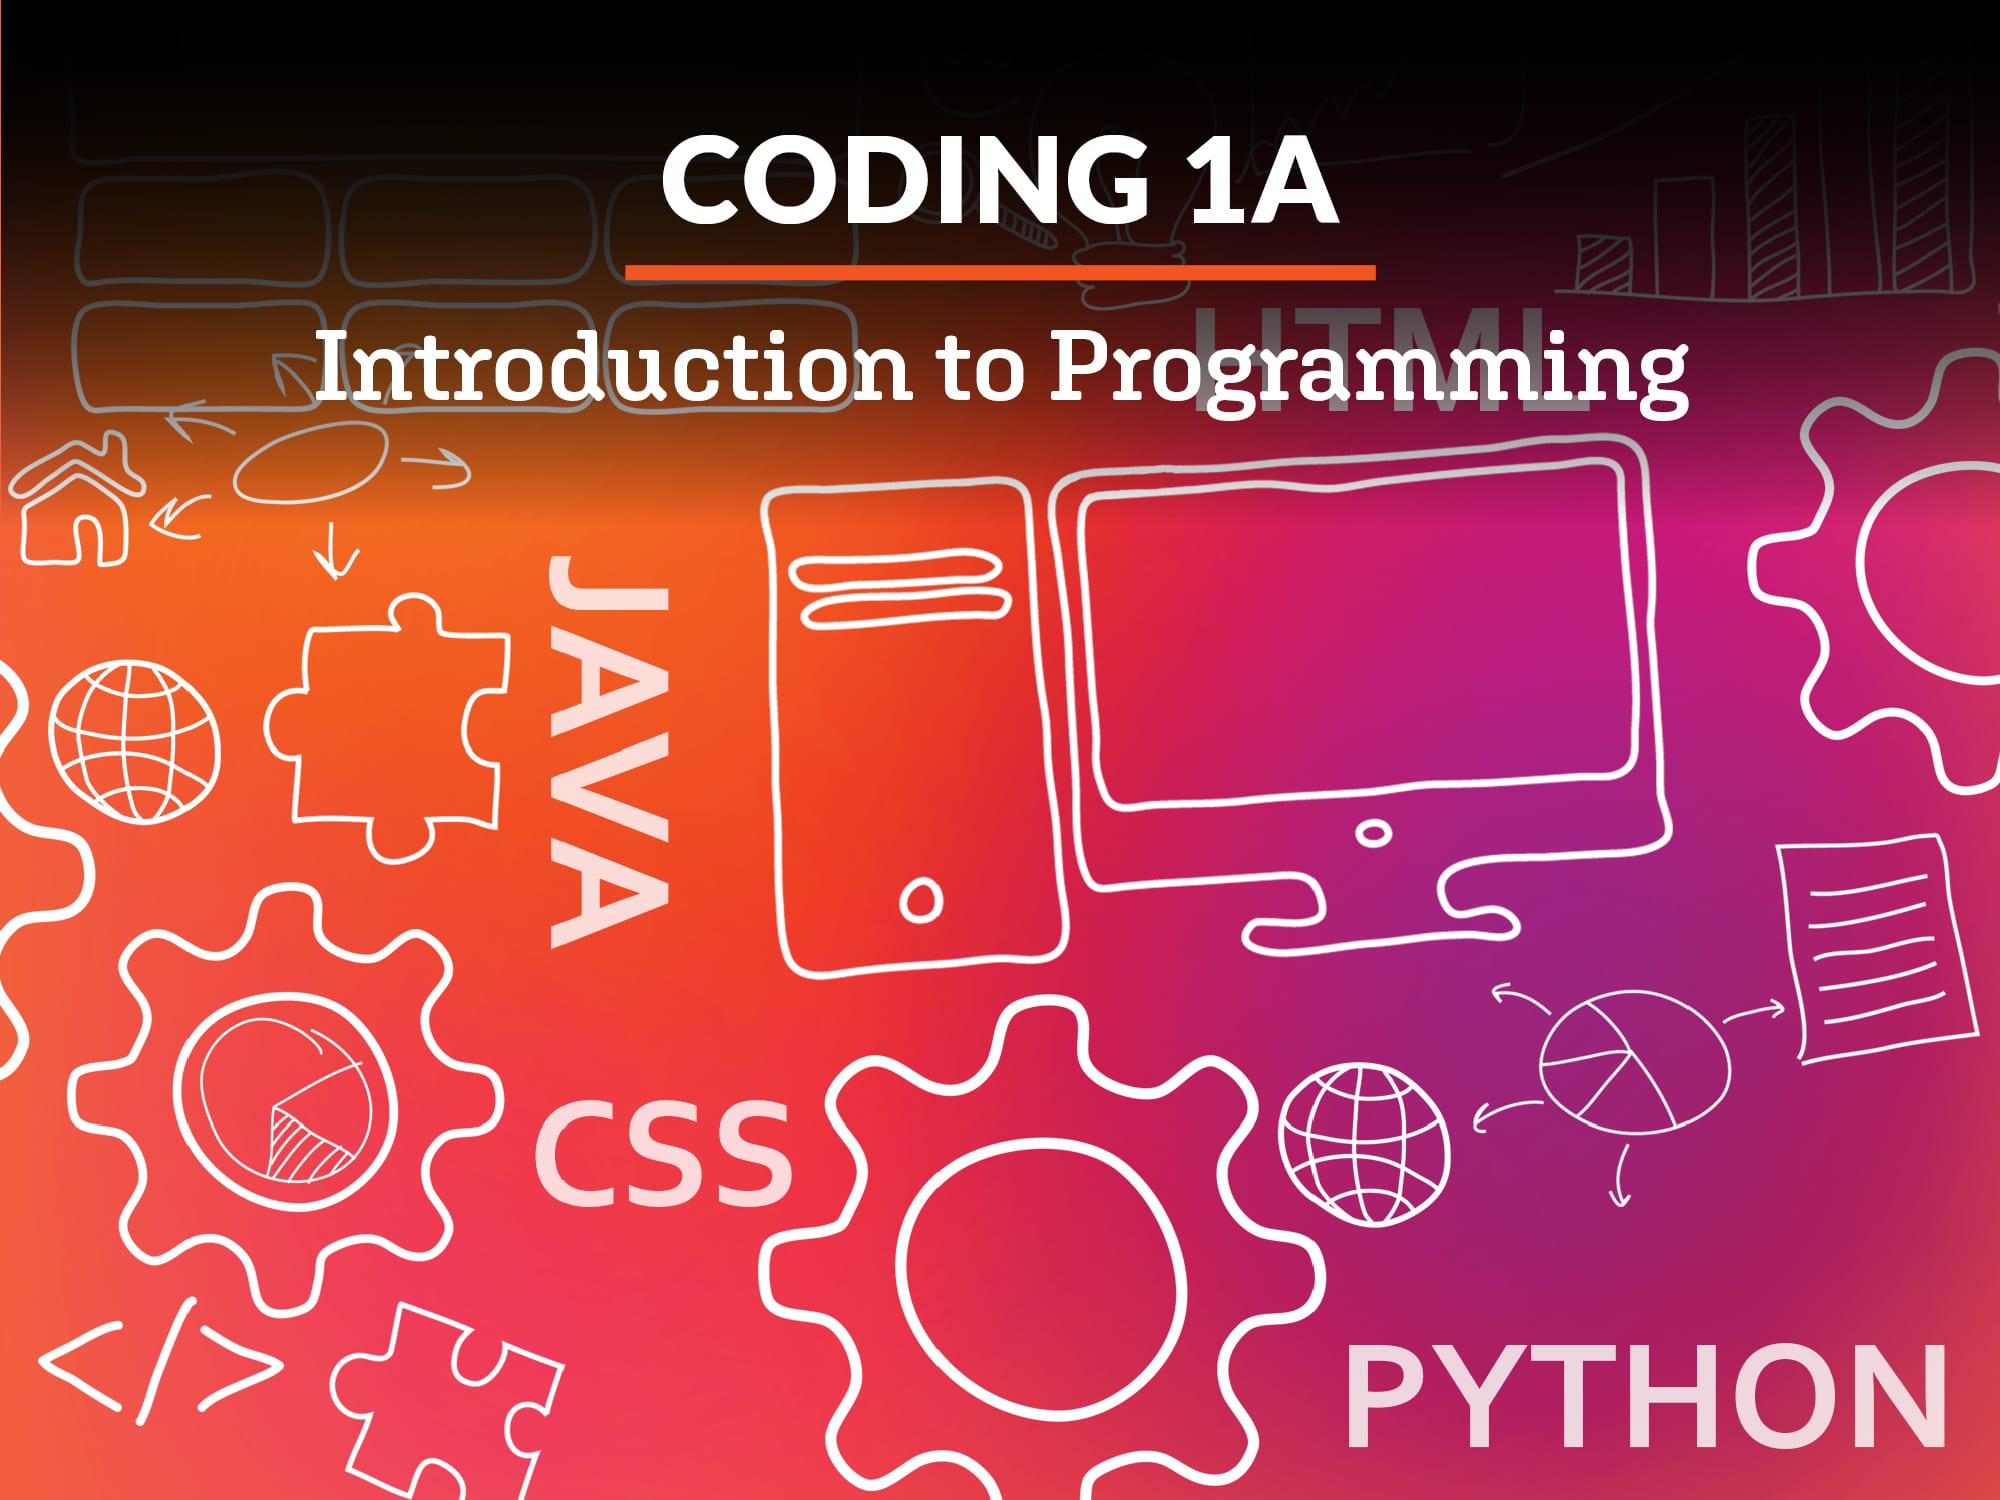 Coding 1A